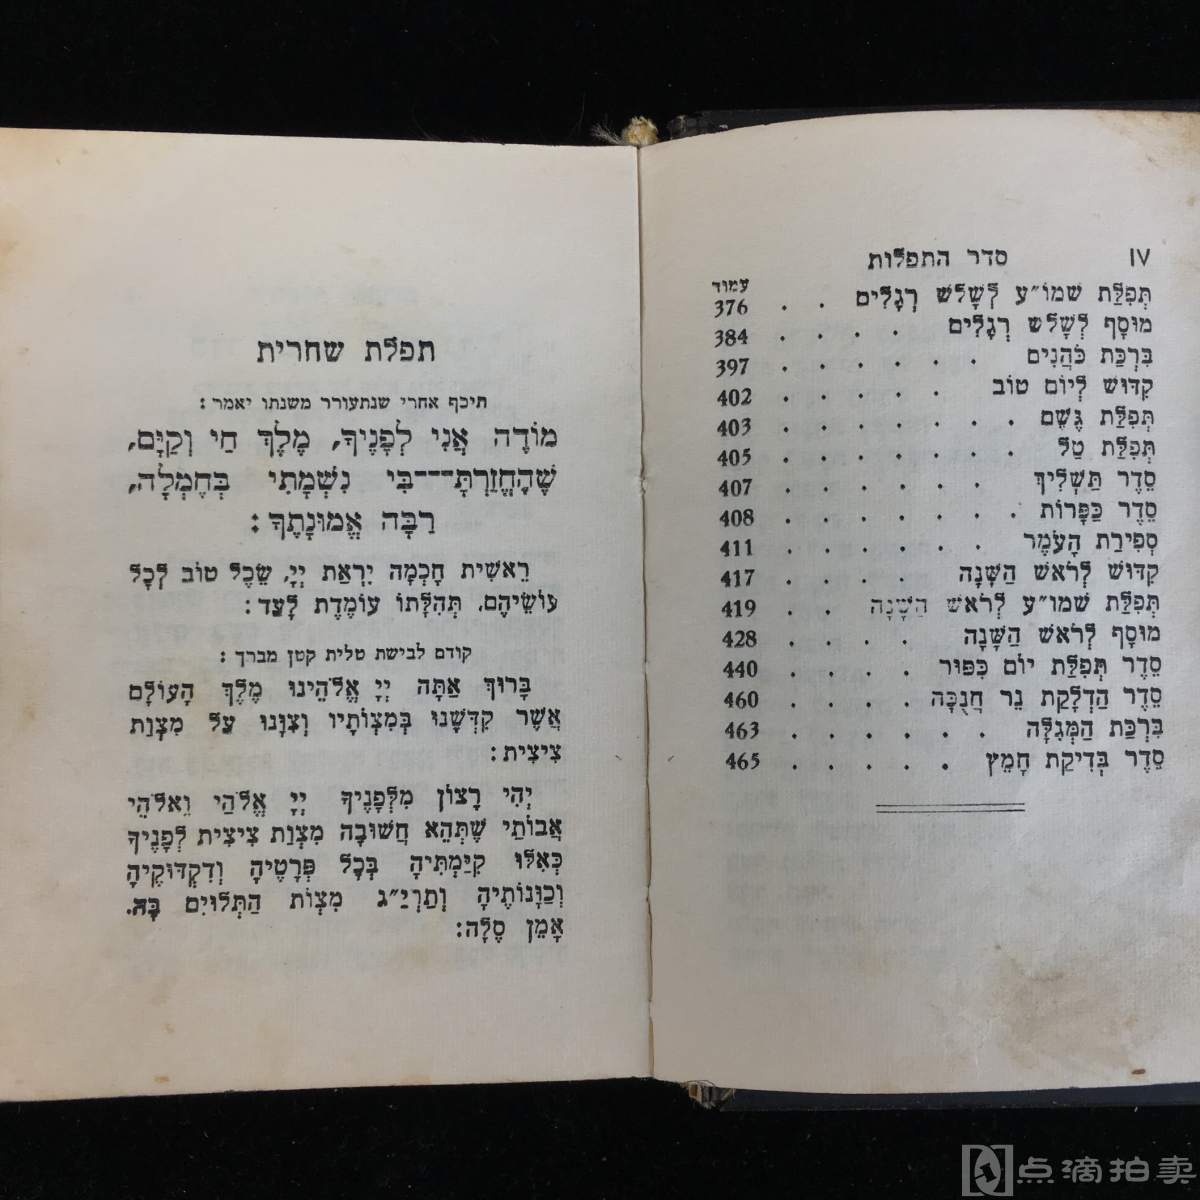 lot11特装手掌本金属封面1959年以色列出版圣经彩色金属浮雕镶嵌封底